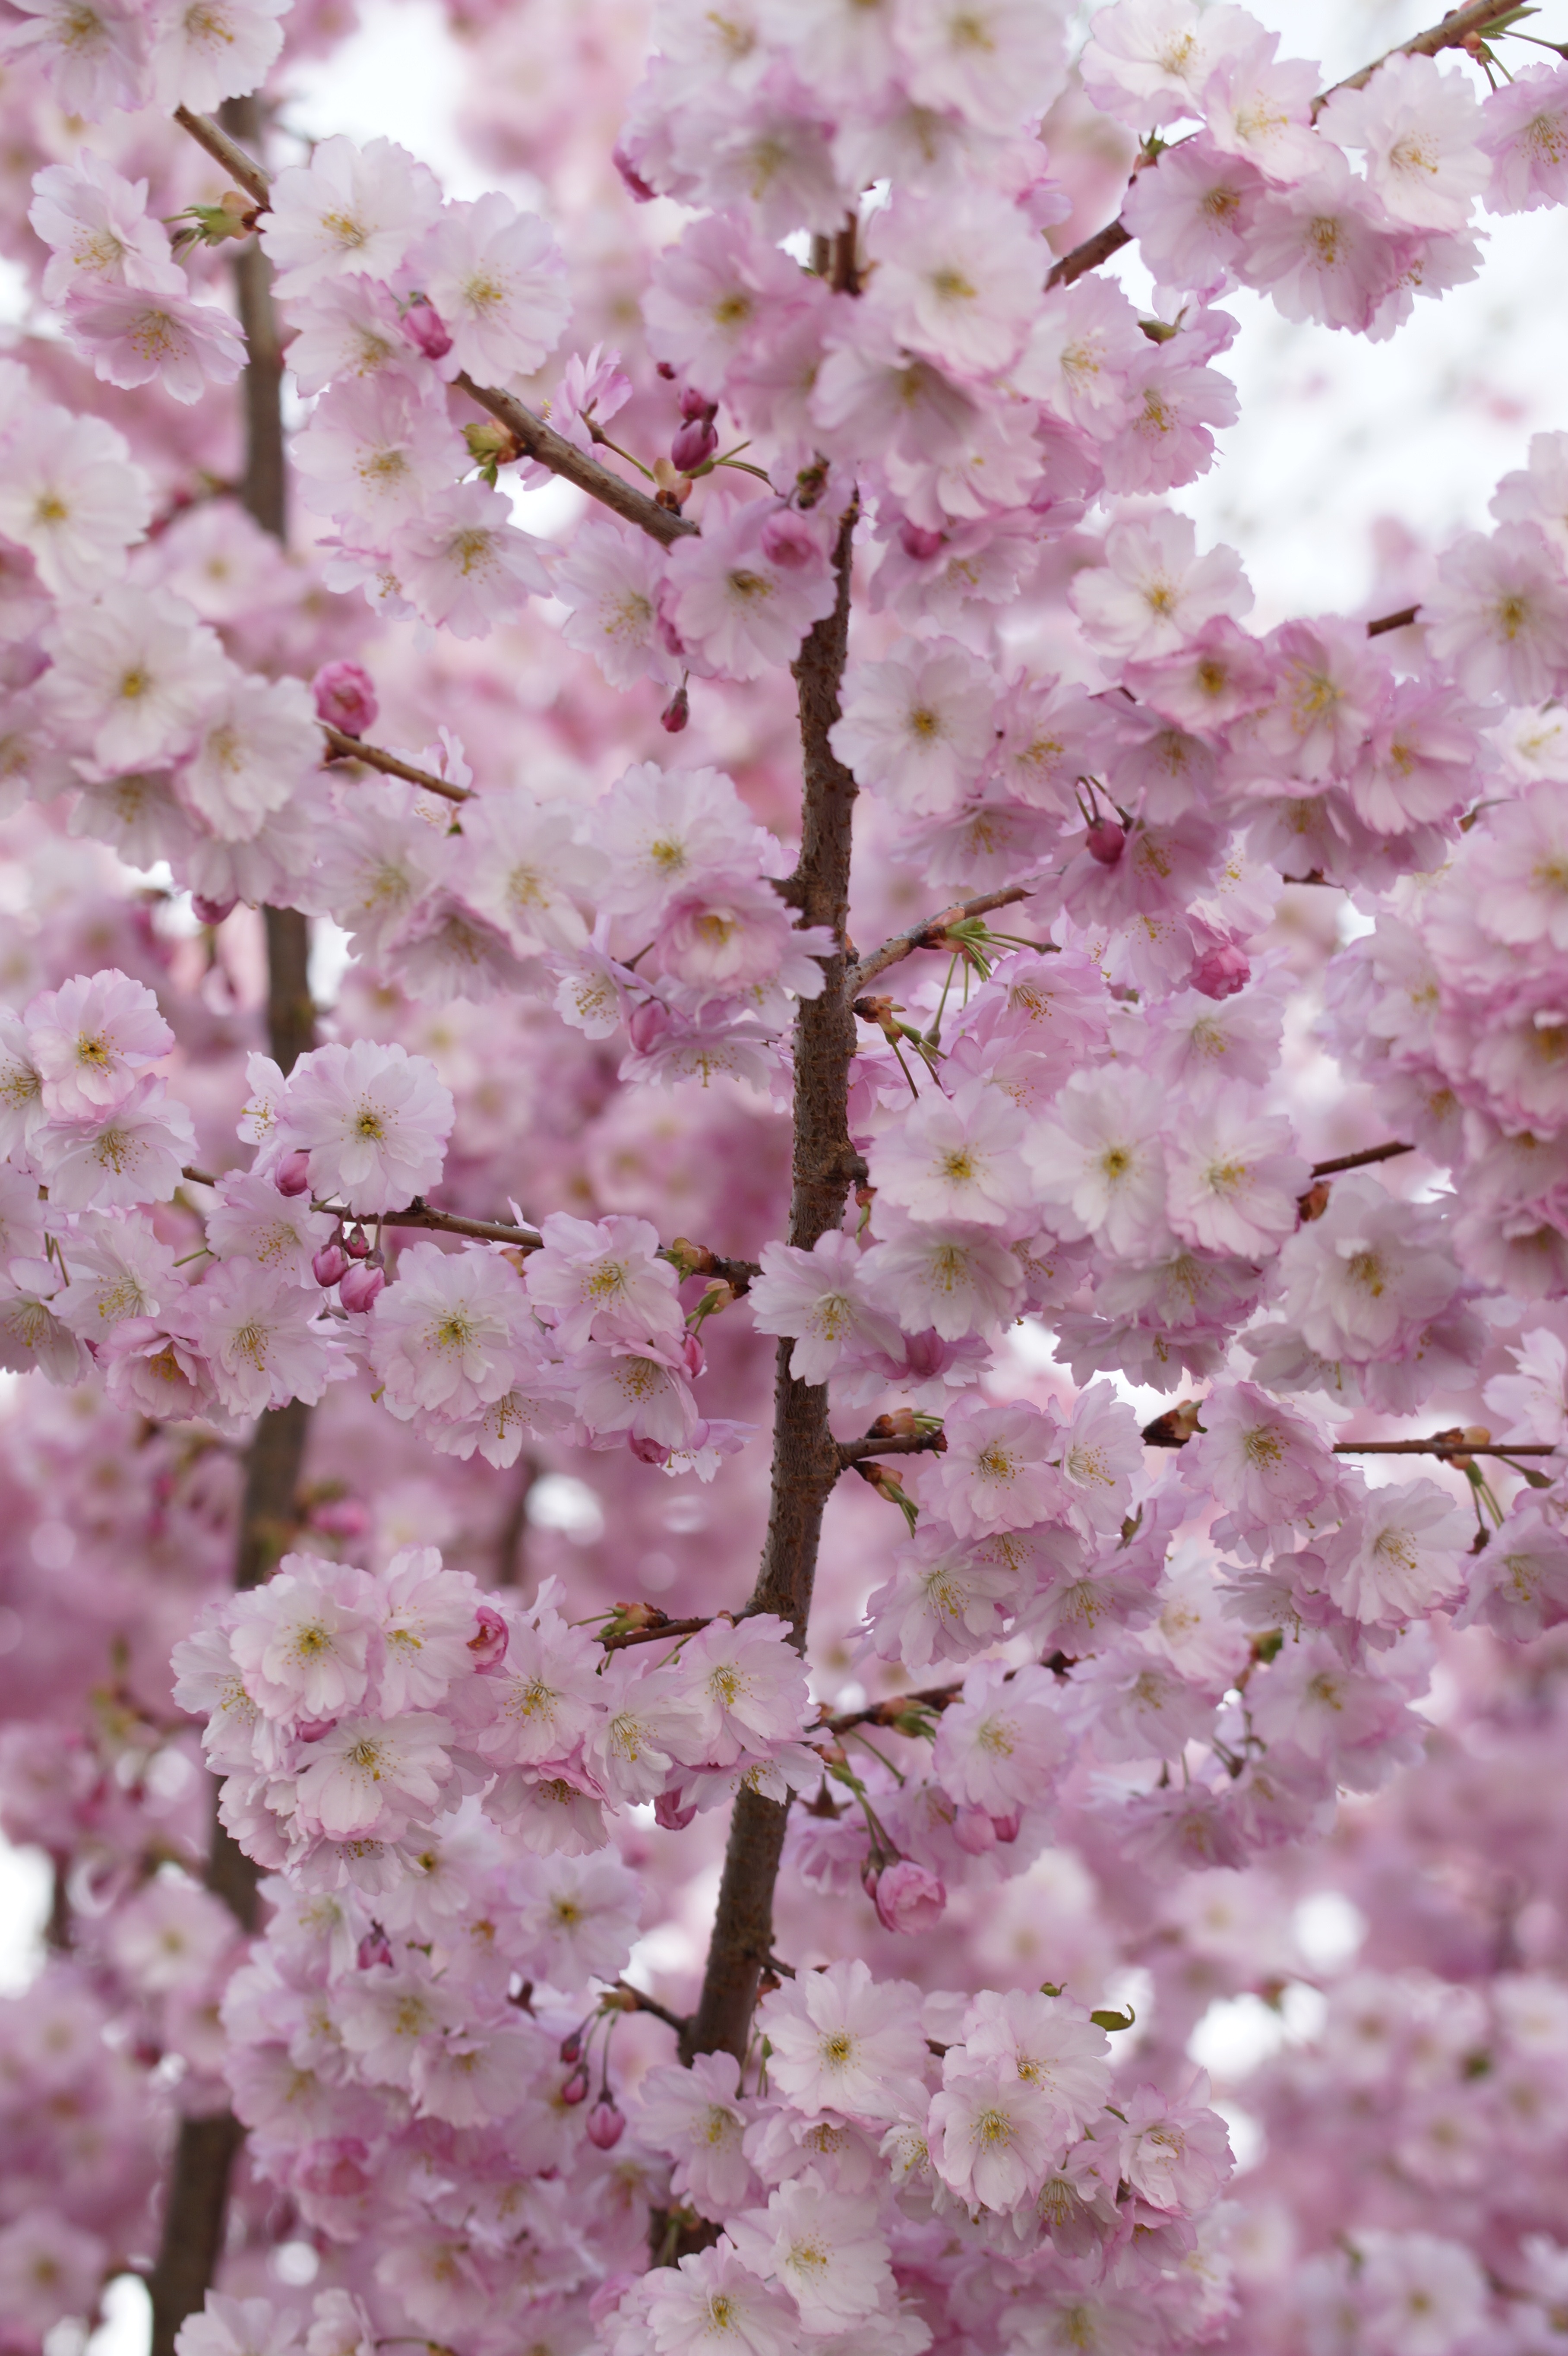 Фото весна бесплатные изображения весеннее пробуждение - бесплатные картинки на Fonwall